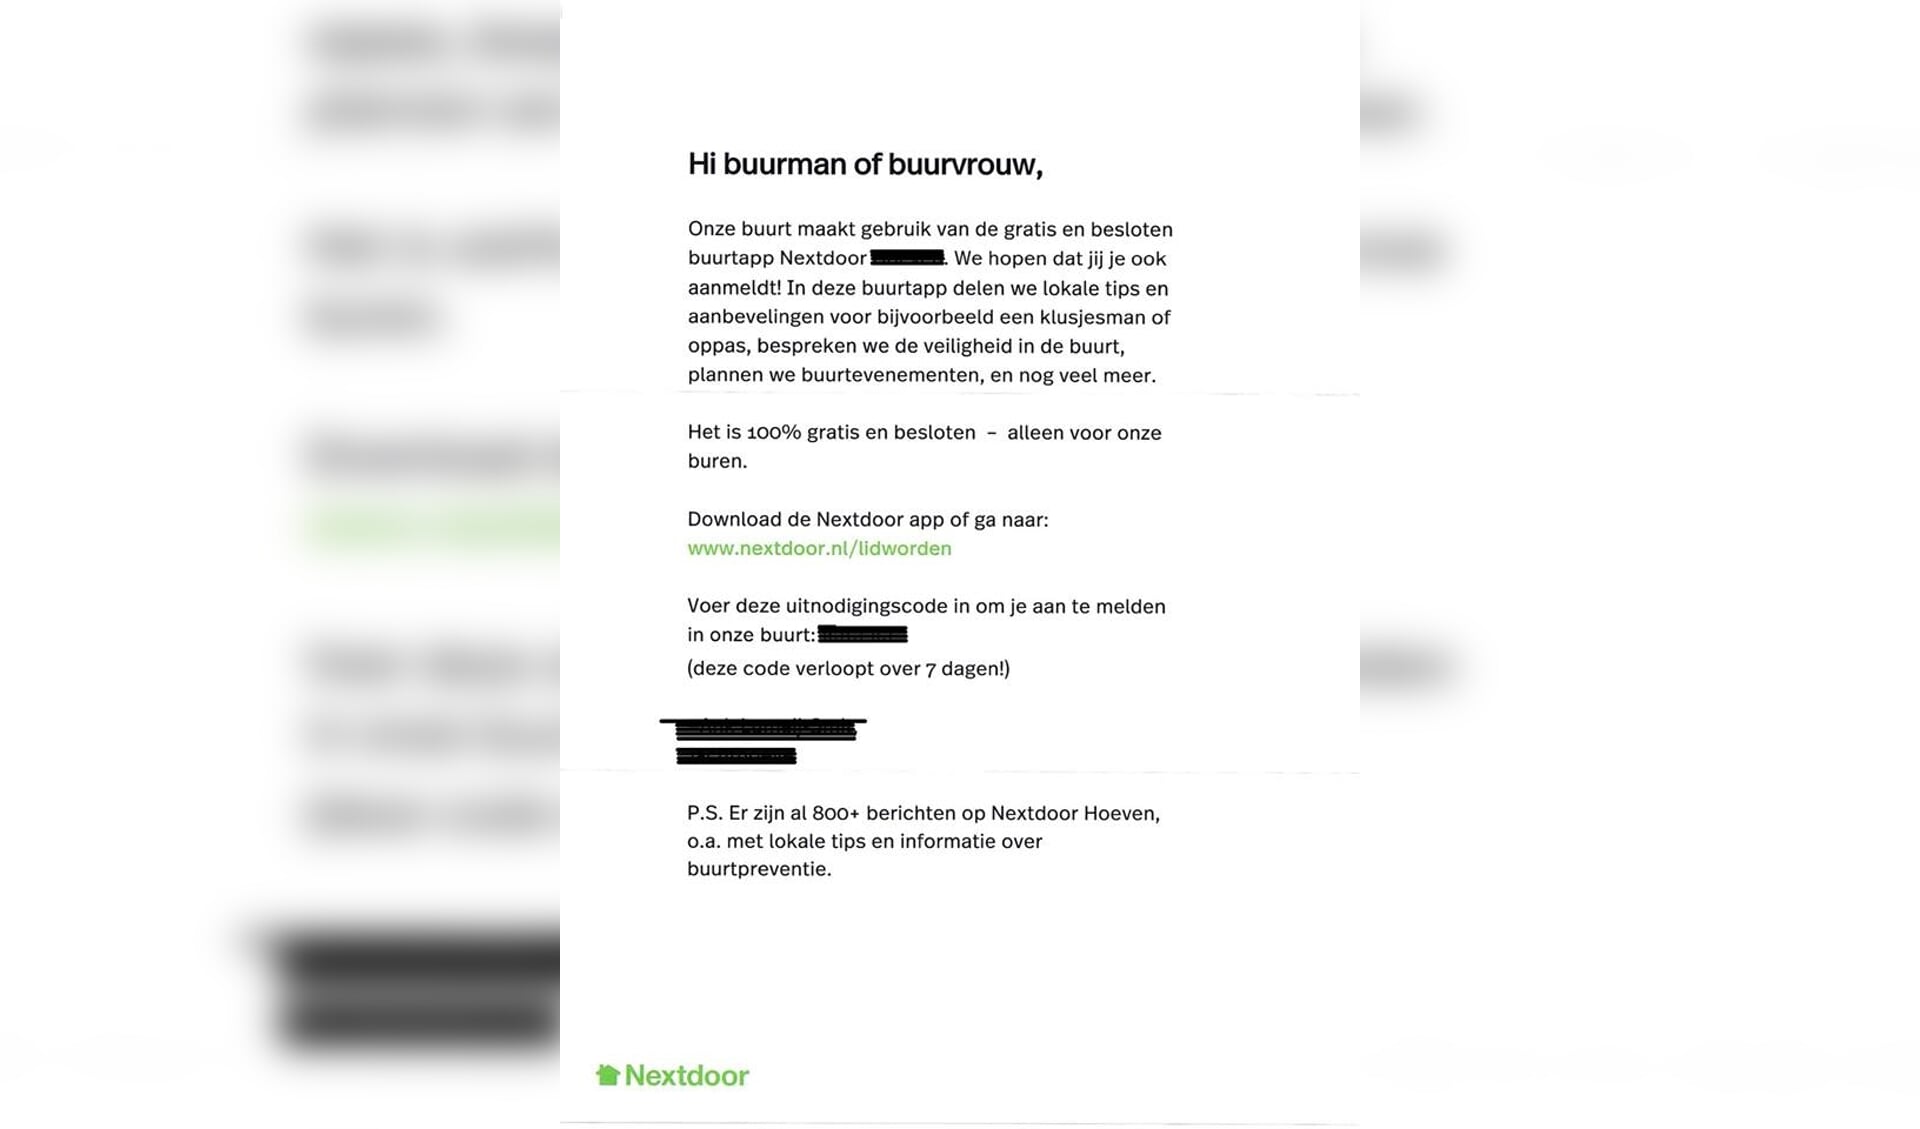 Deze brief van Nextdoor viel afgelopen tijd bij veel inwoners van Houten op de deurmat